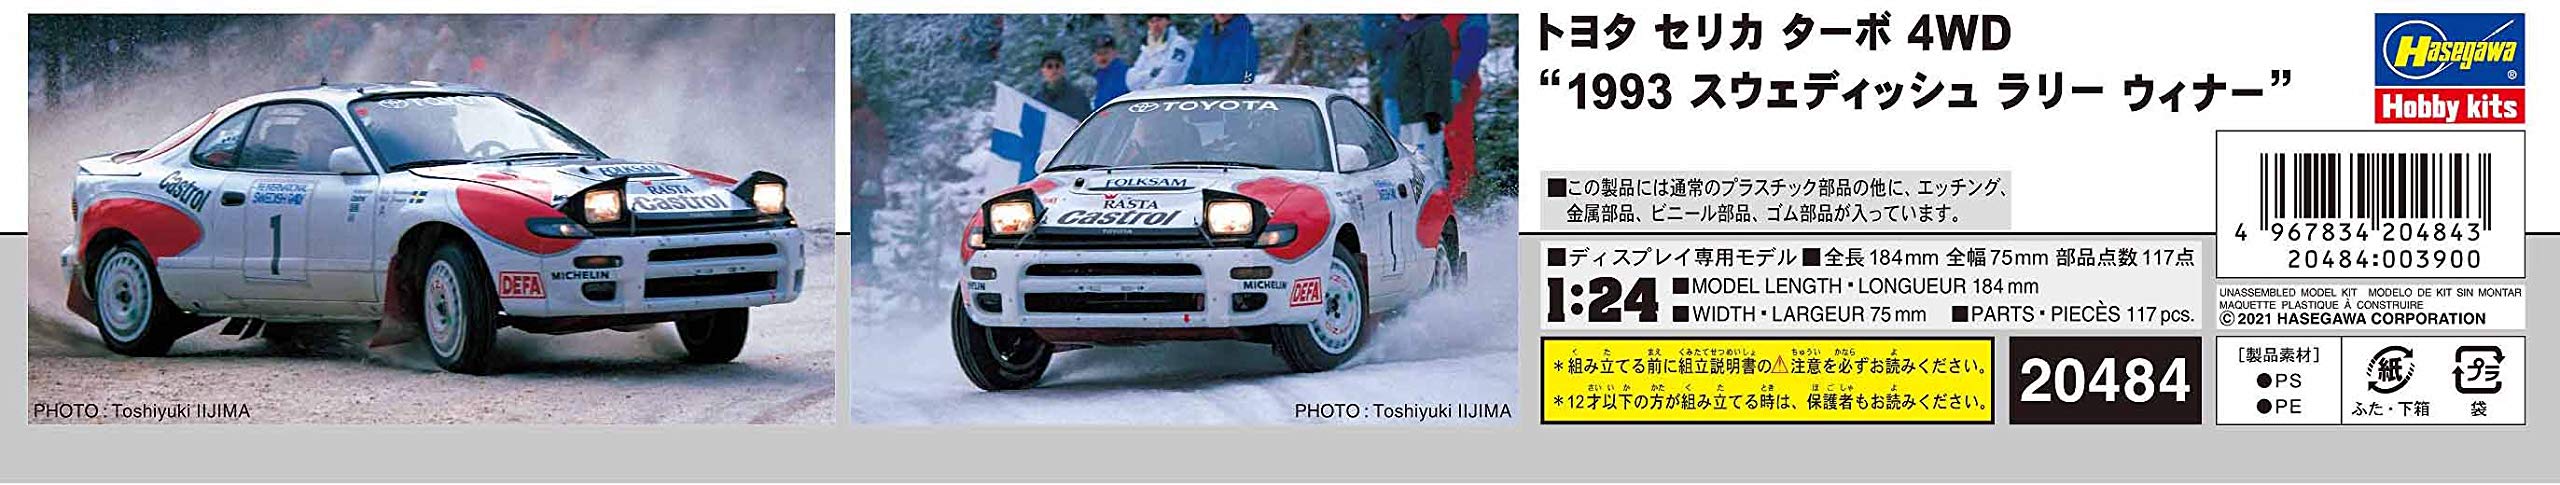 Hasegawa 1/24 Toyota Celica Turbo 4Wd 1993 Swedish Rally Winner Scale Racing Car